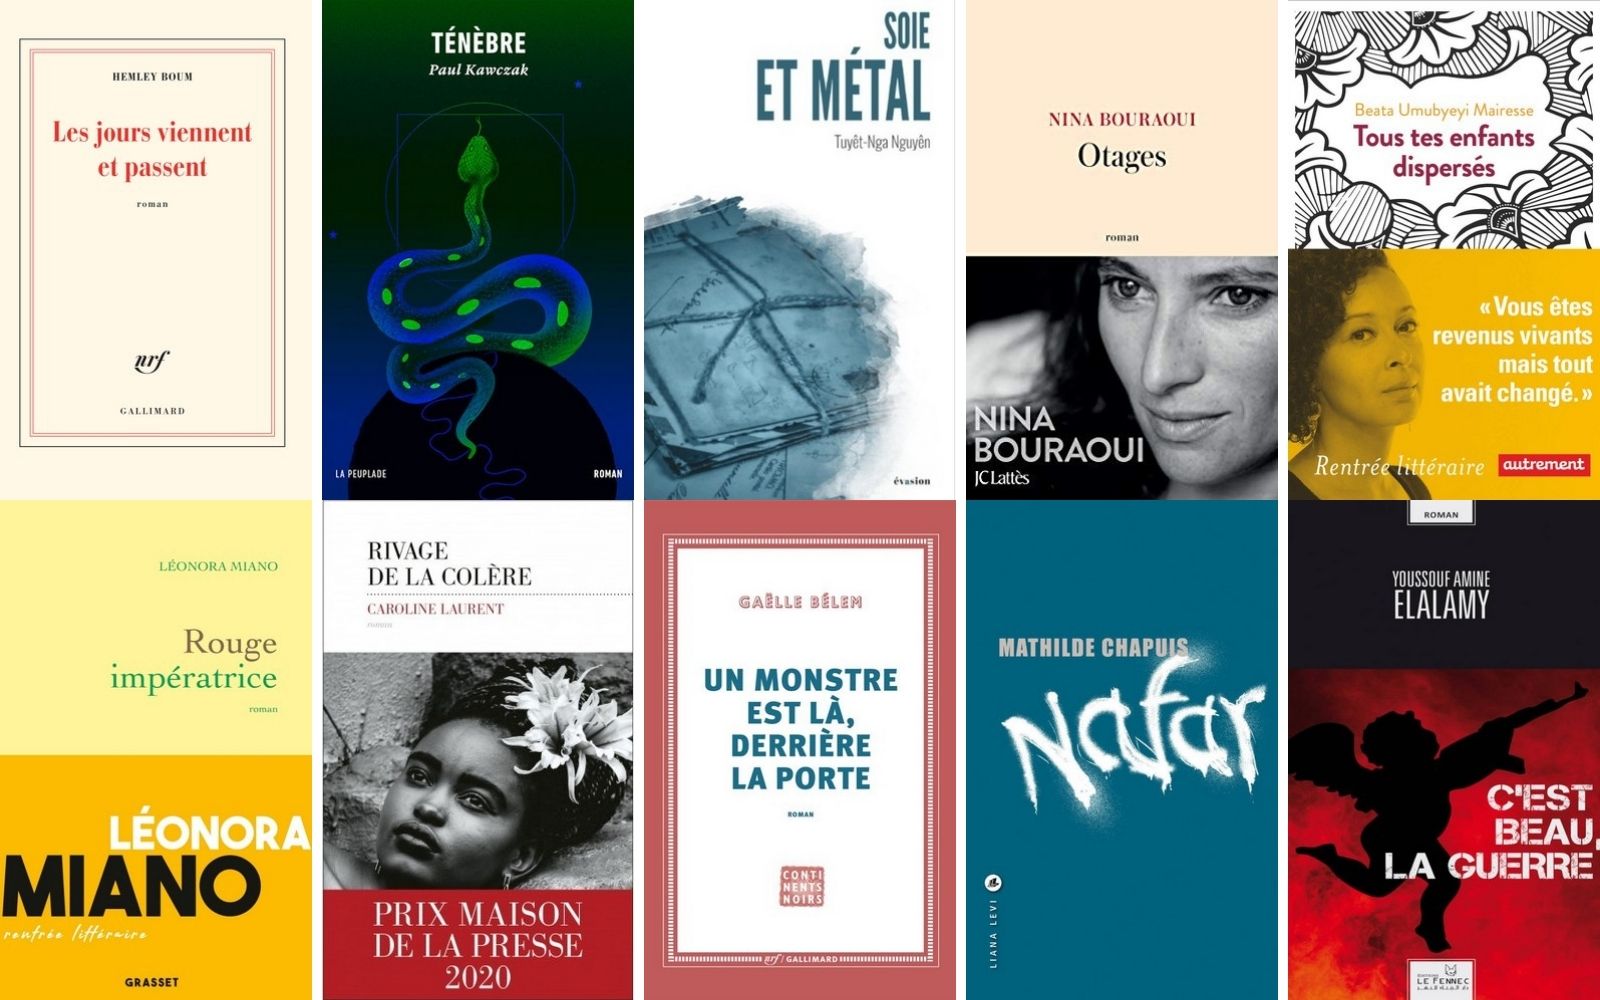 L'écrivaine réunionnaise Gaëlle Bélem retenue parmi les 10 finalistes du Prix des 5 Continents 2020